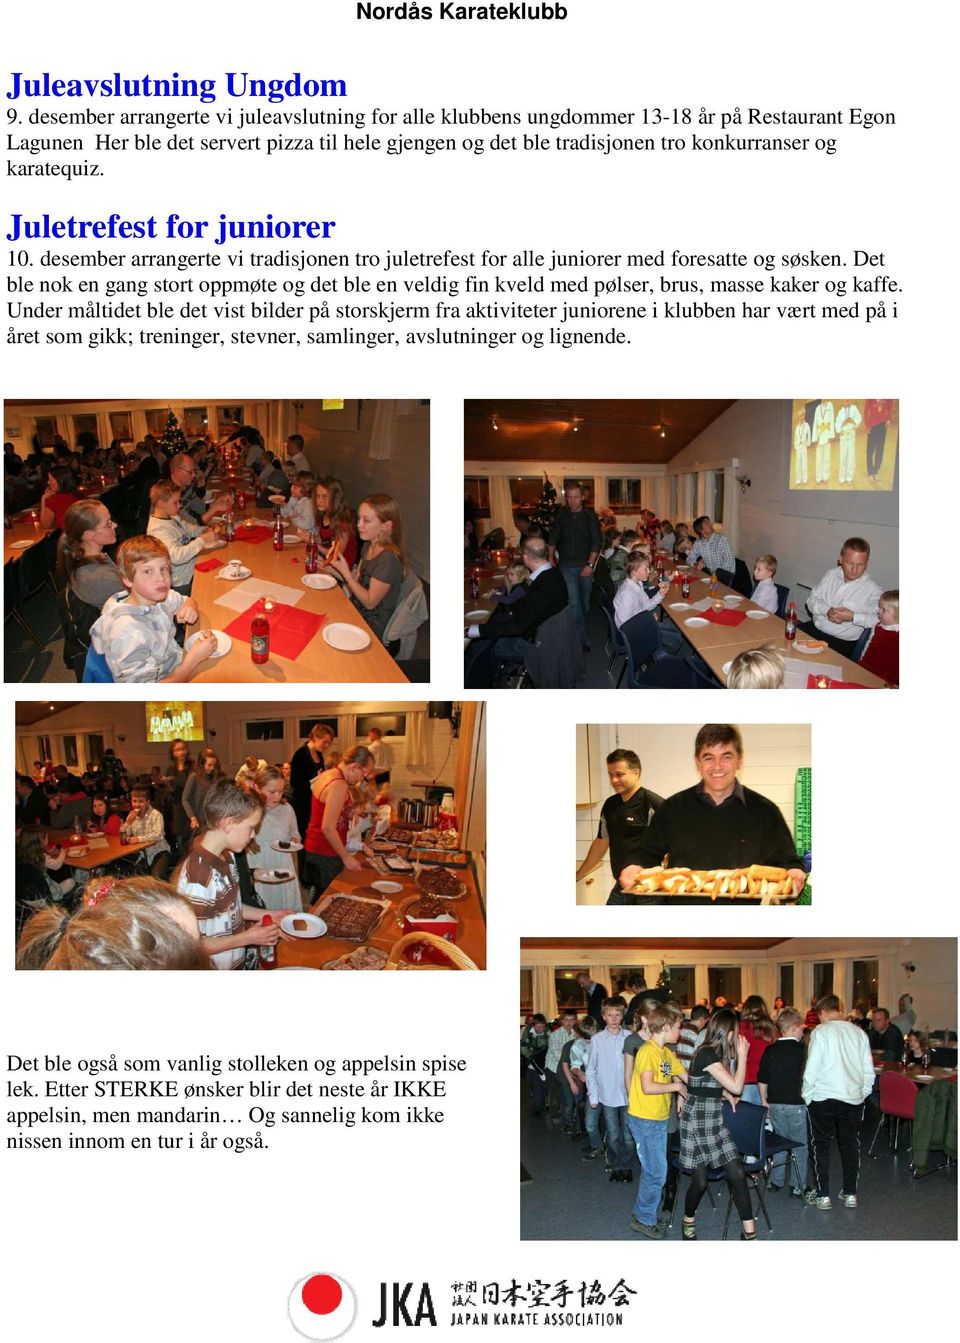 Juletrefest for juniorer 10. desember arrangerte vi tradisjonen tro juletrefest for alle juniorer med foresatte og søsken.